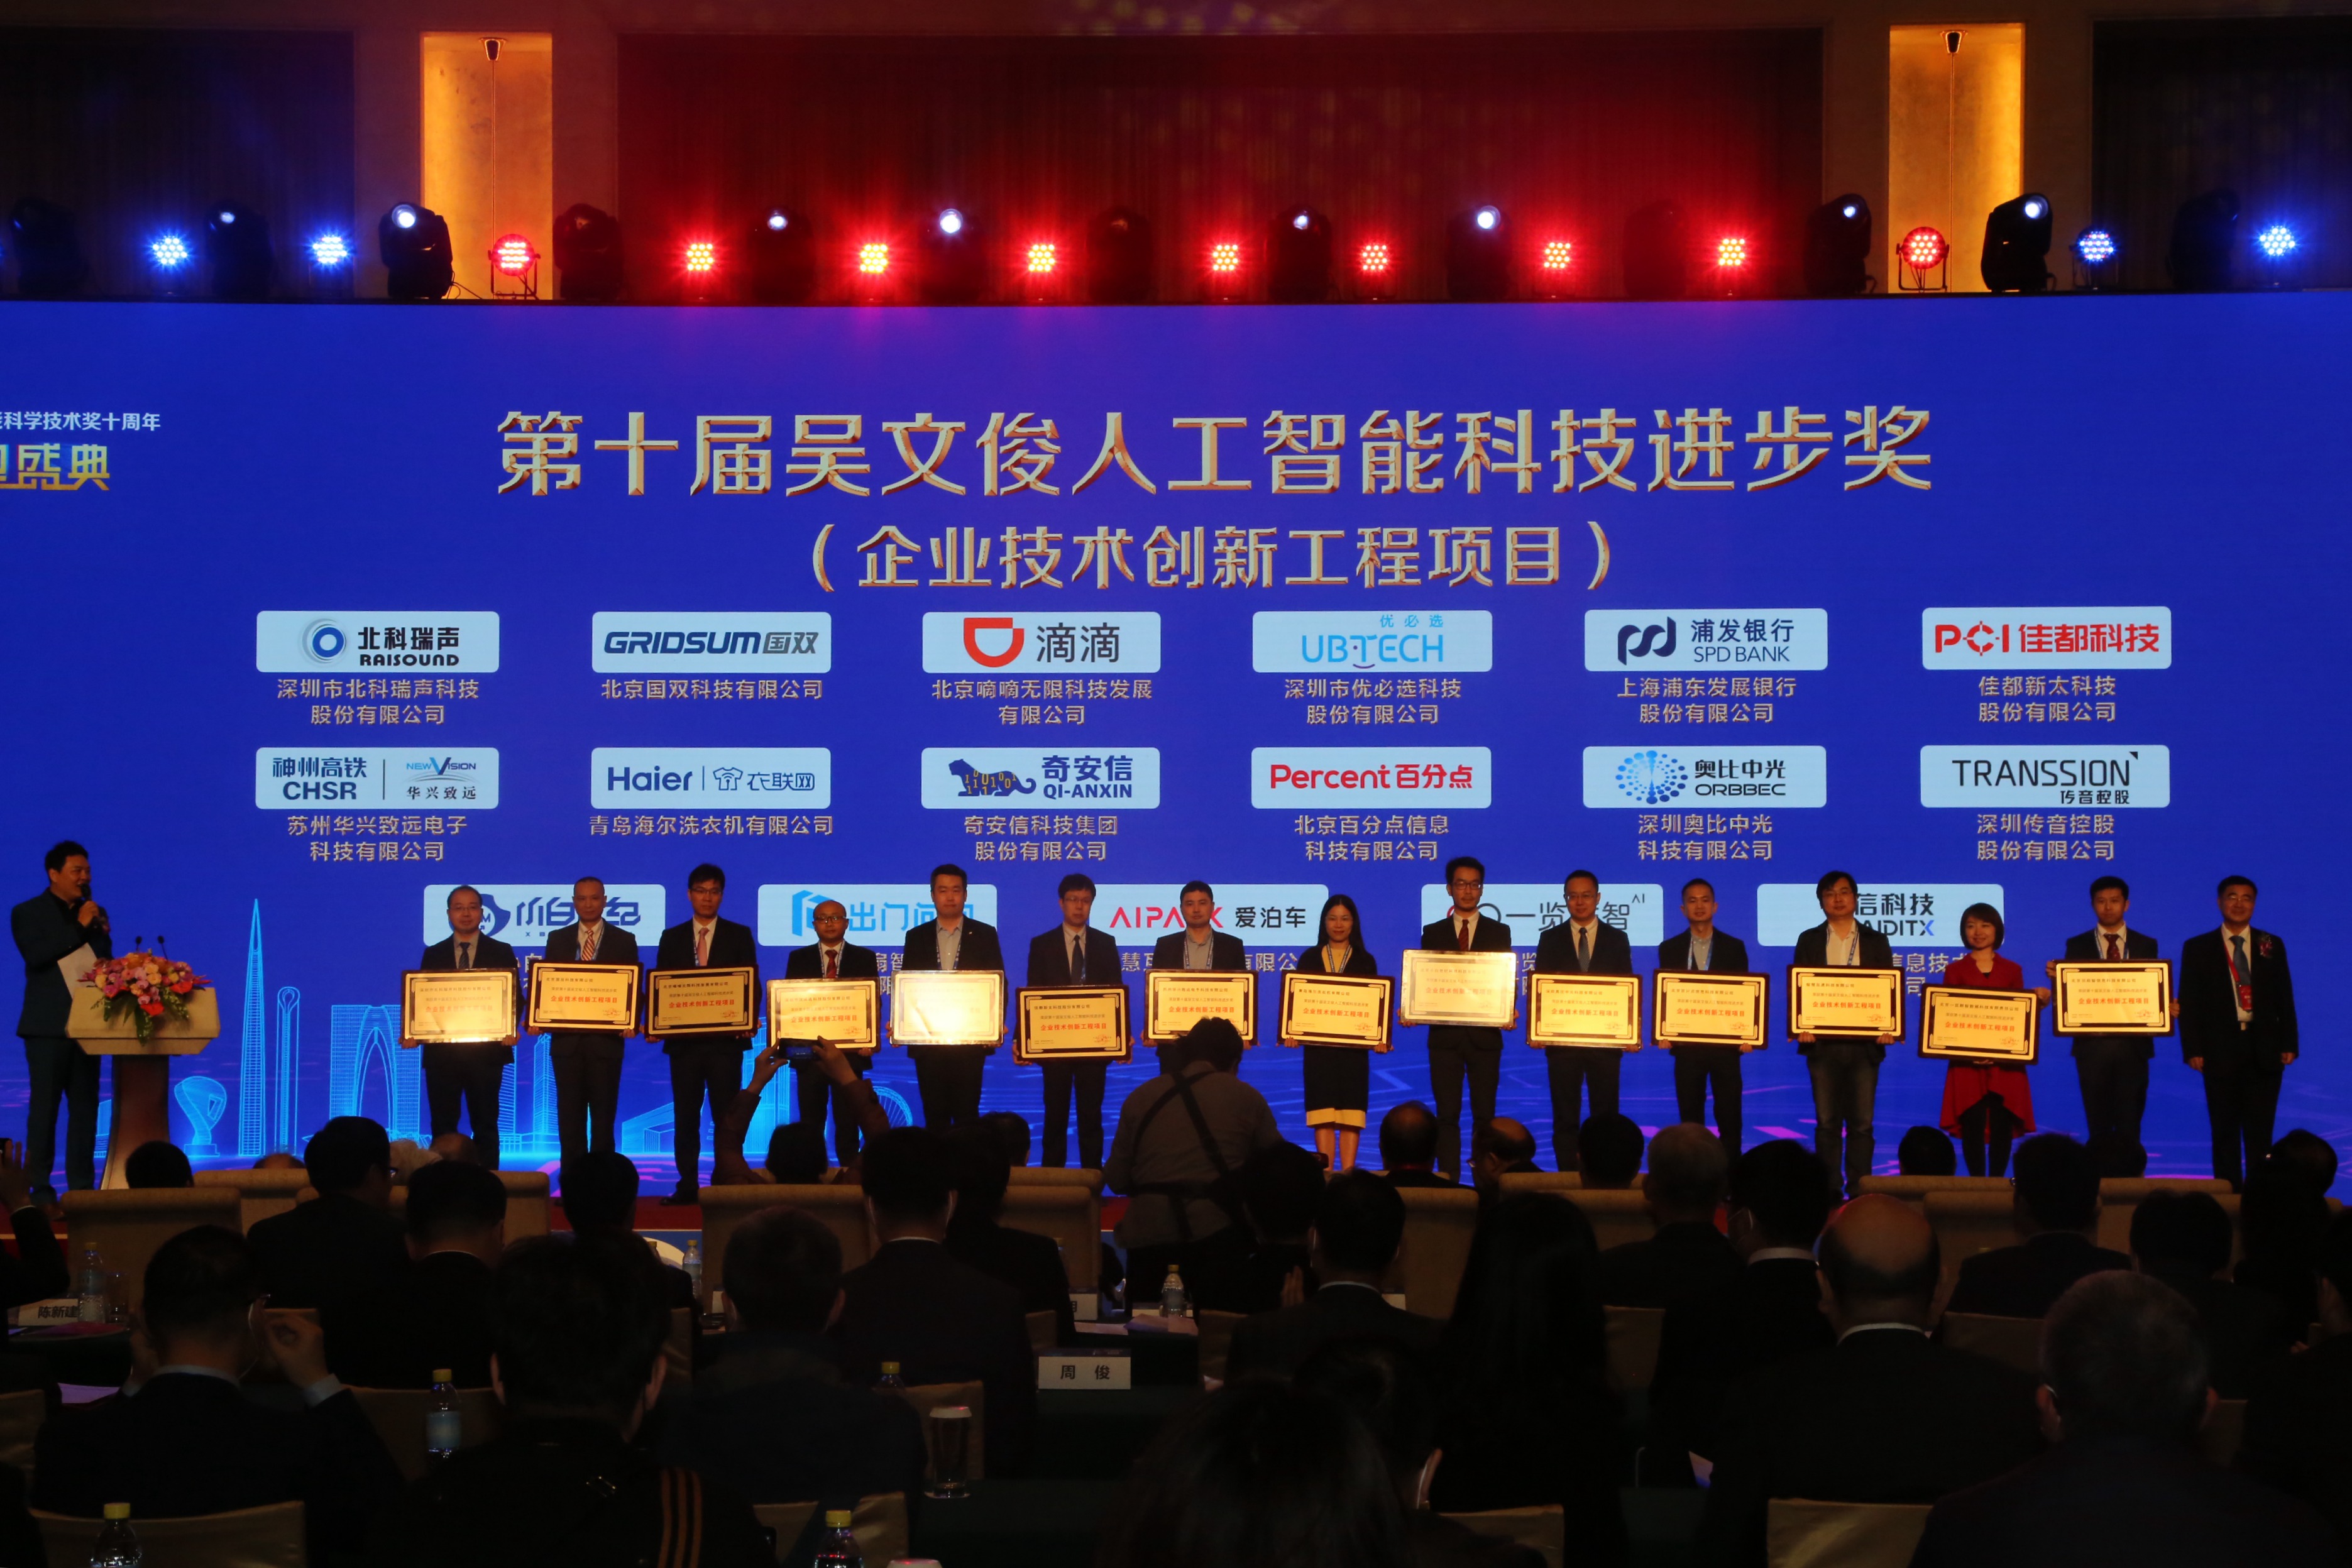 吴文俊人工智能科学技术奖十周年颁奖盛典在京举办